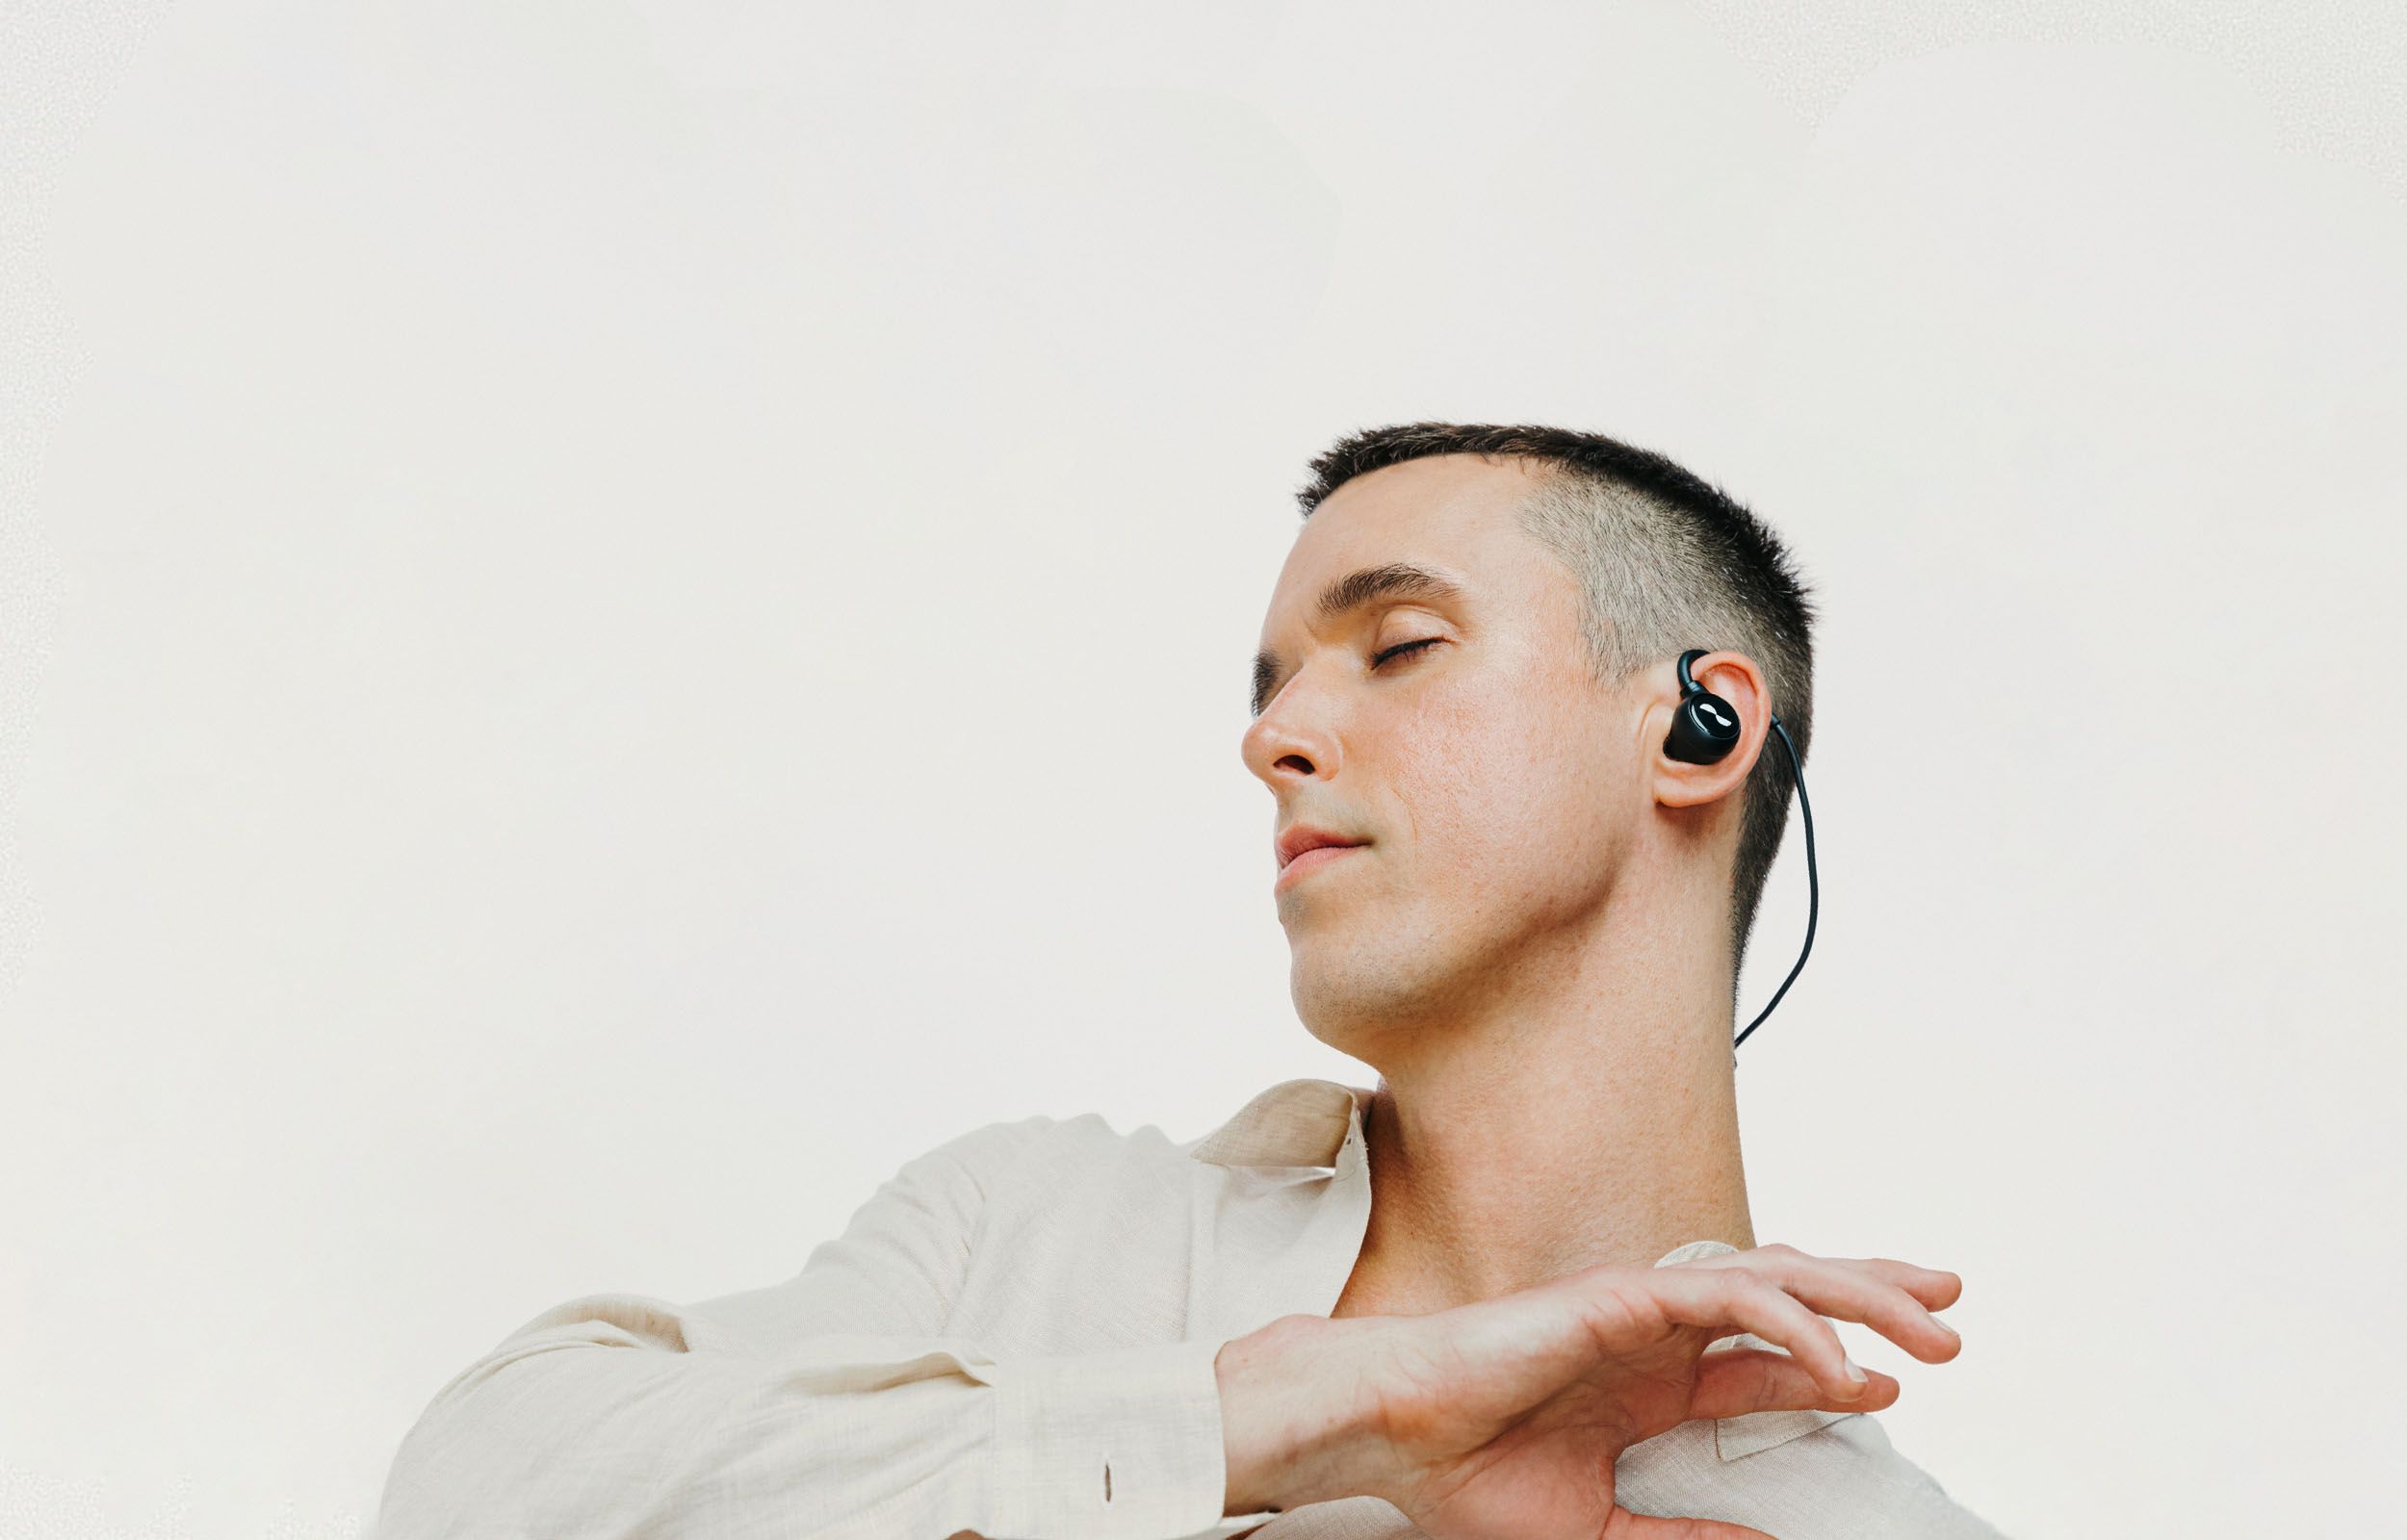 Person dancing with NURALOOP earbuds in ears